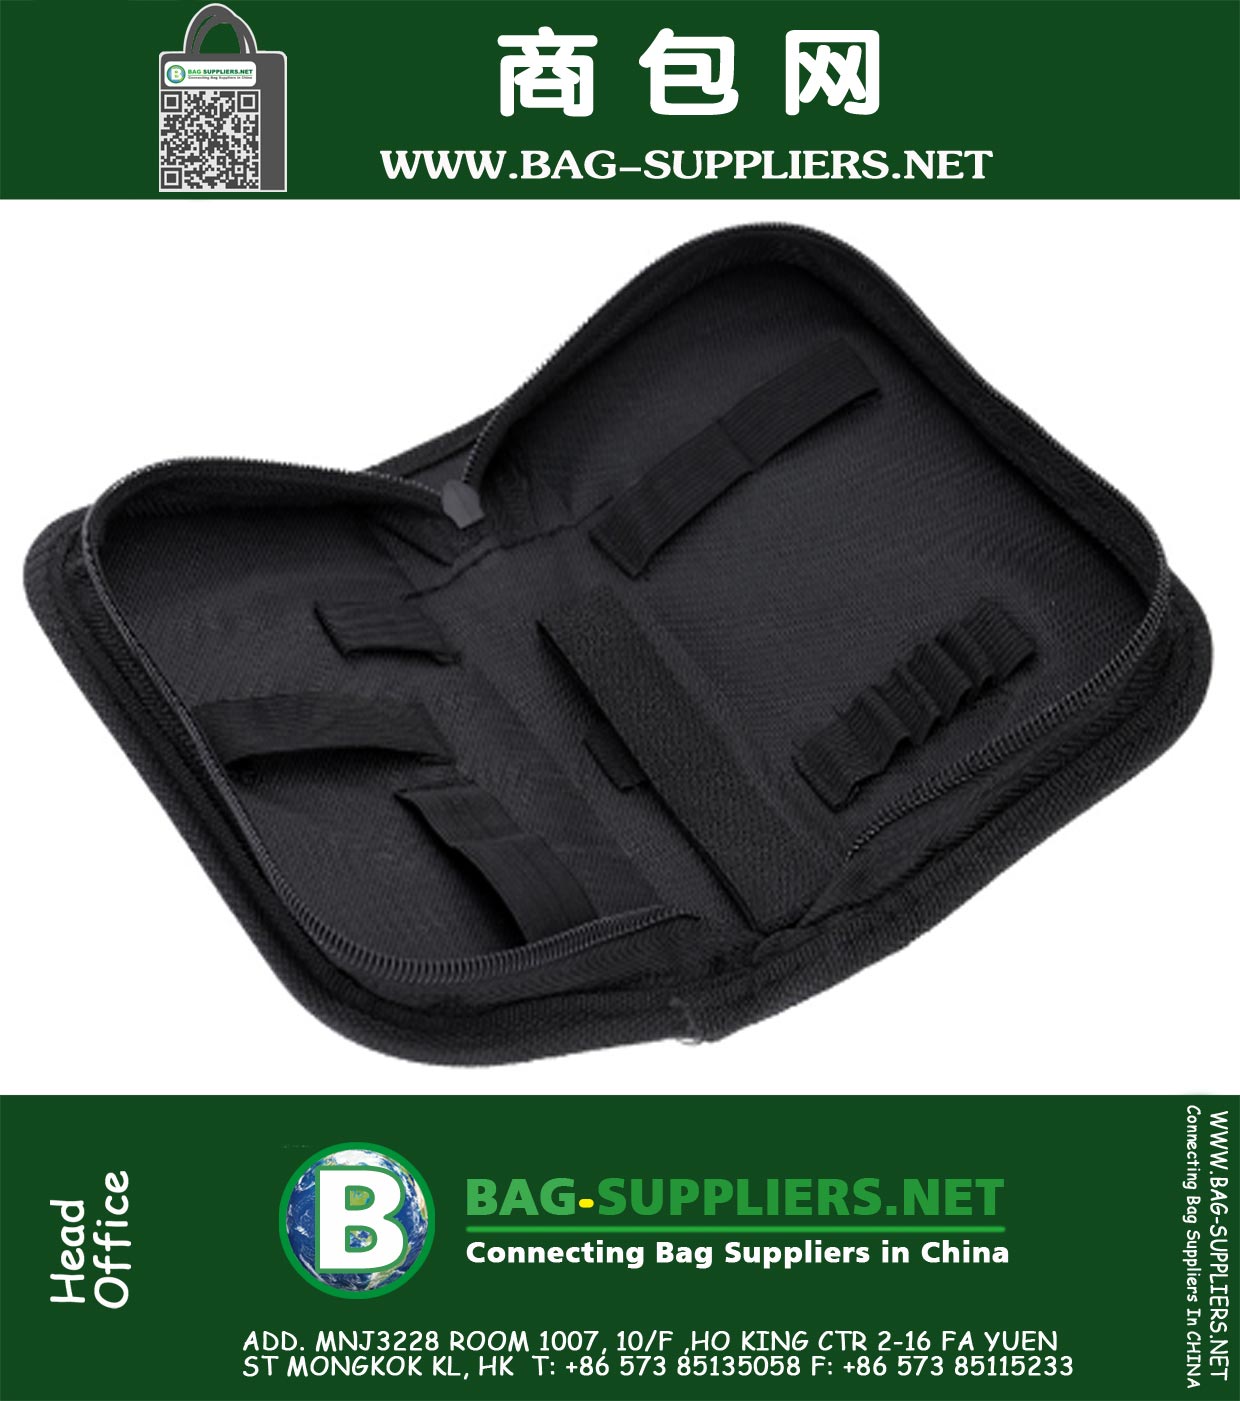 ZIP Watch Repair Tool Kit Portable Repair Bag